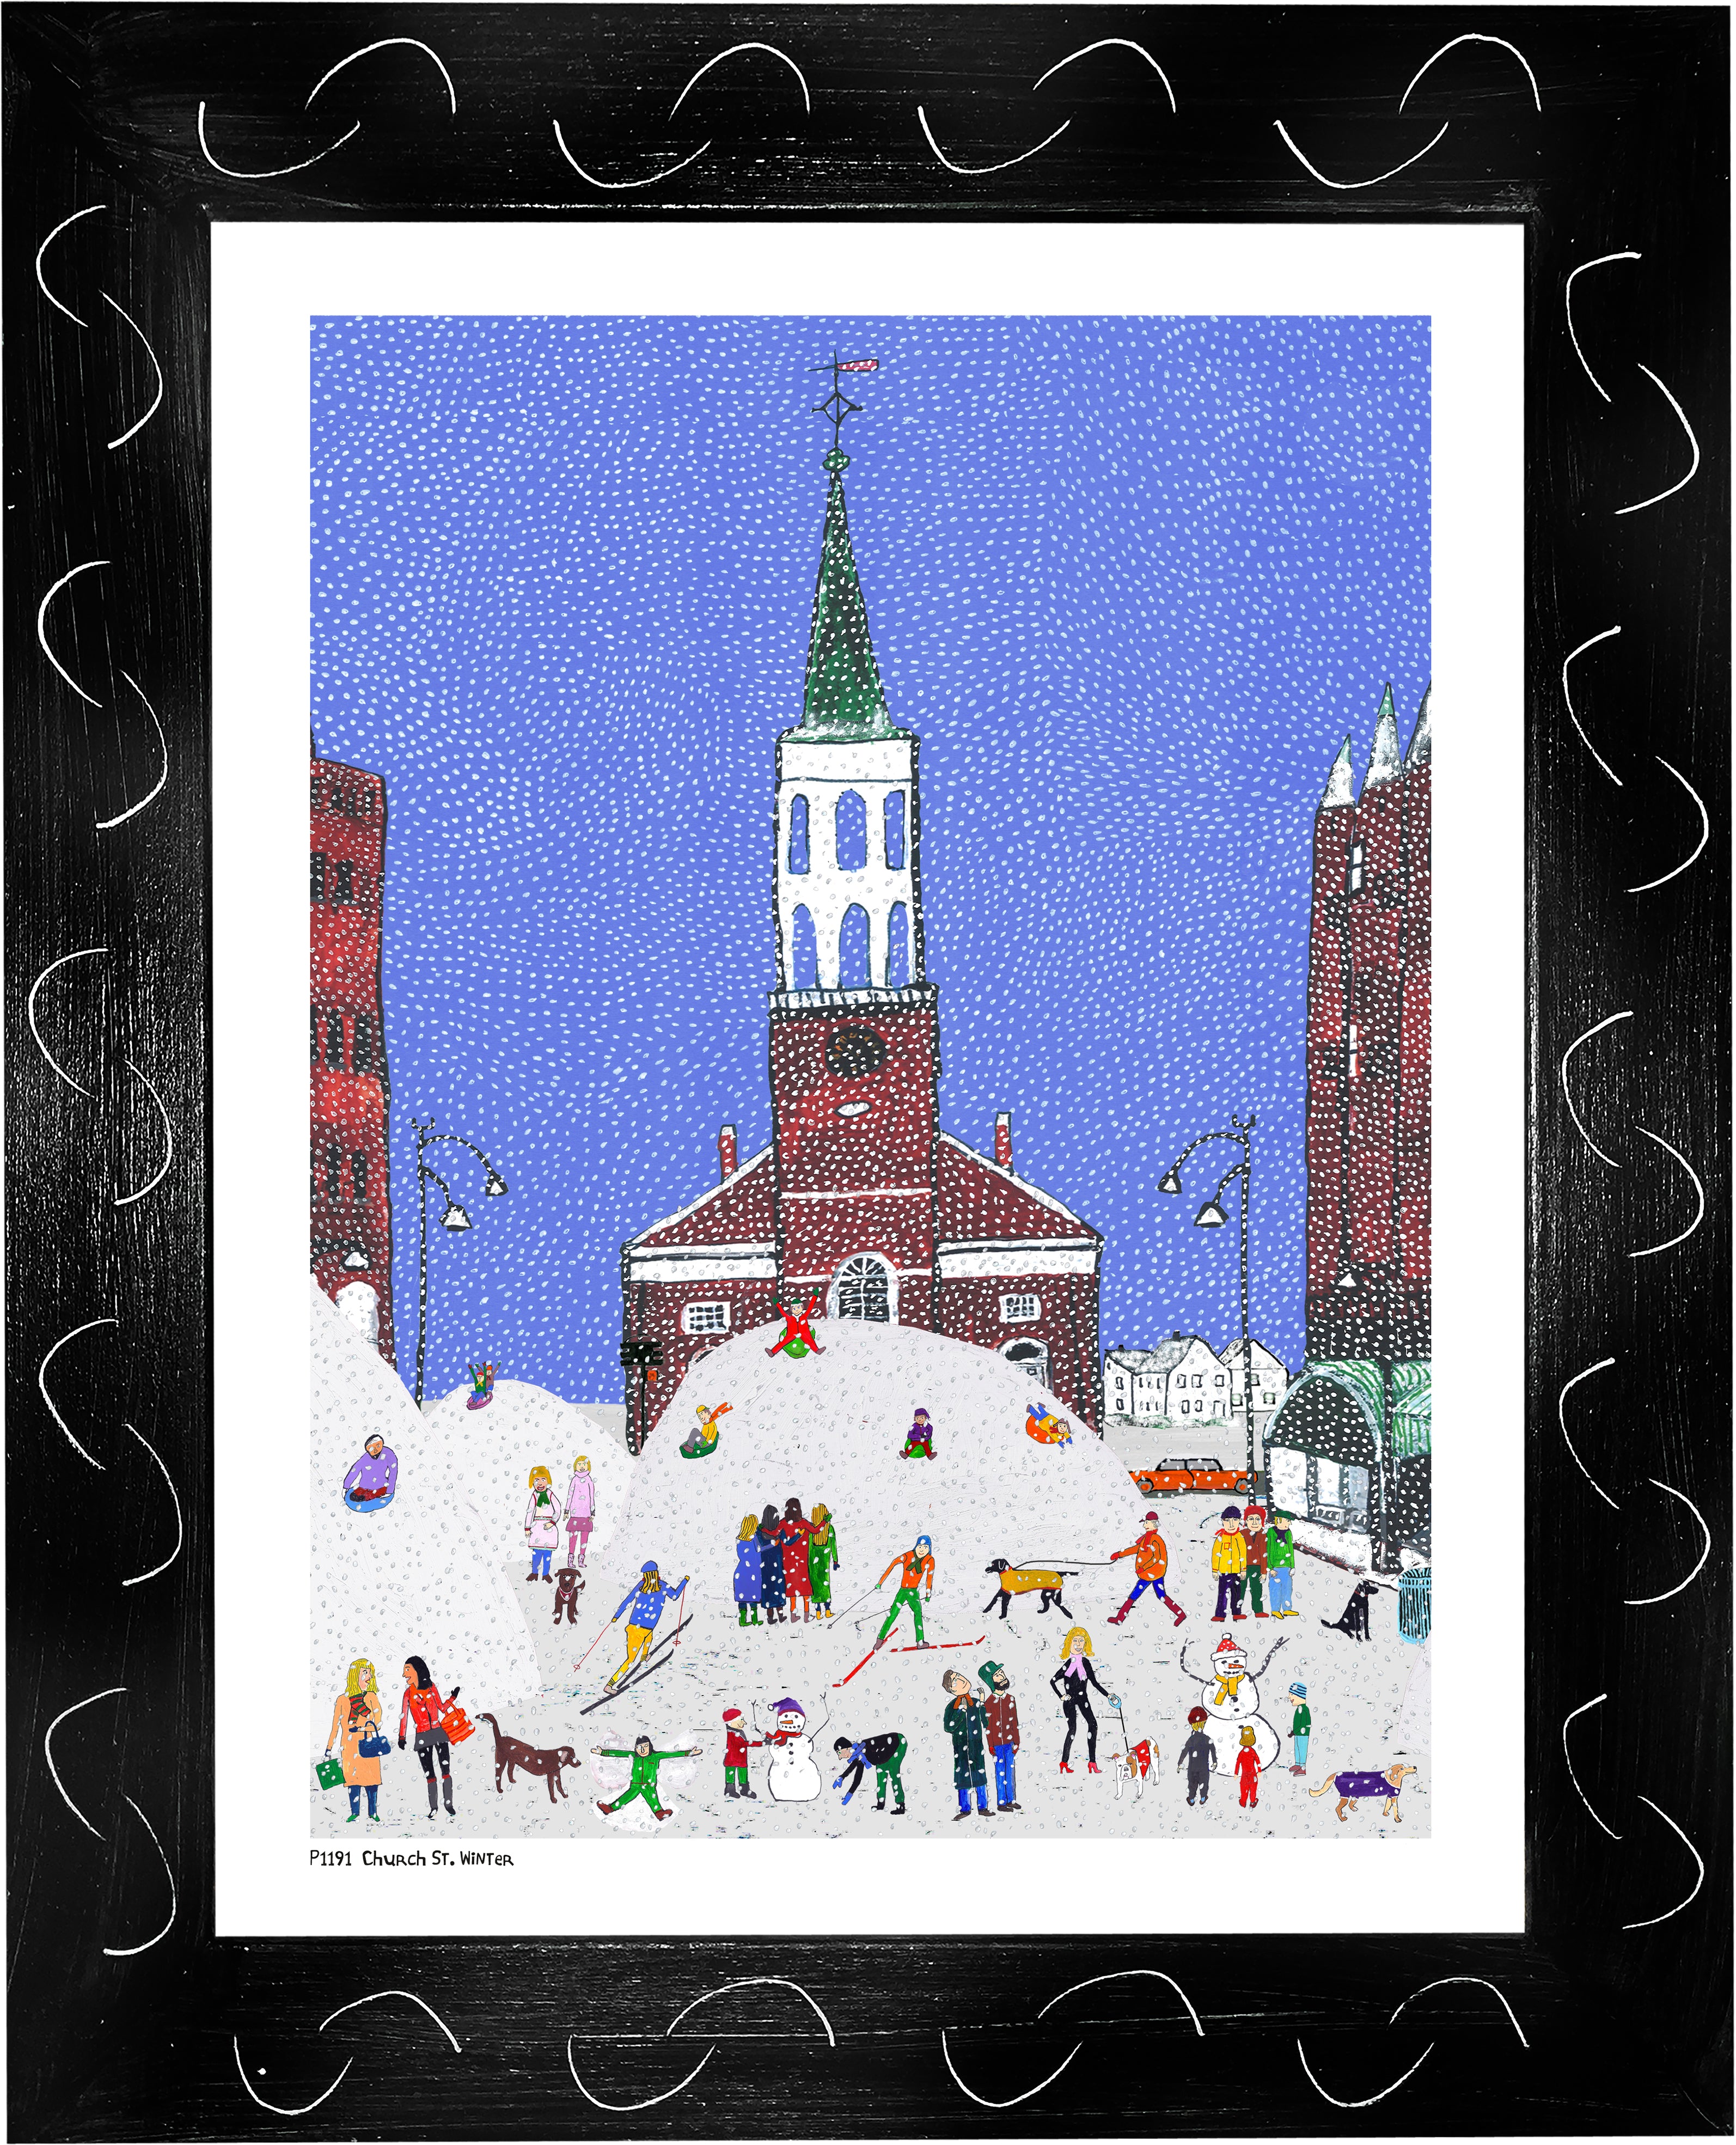 P1191 - Church St. Winter (Portrait)